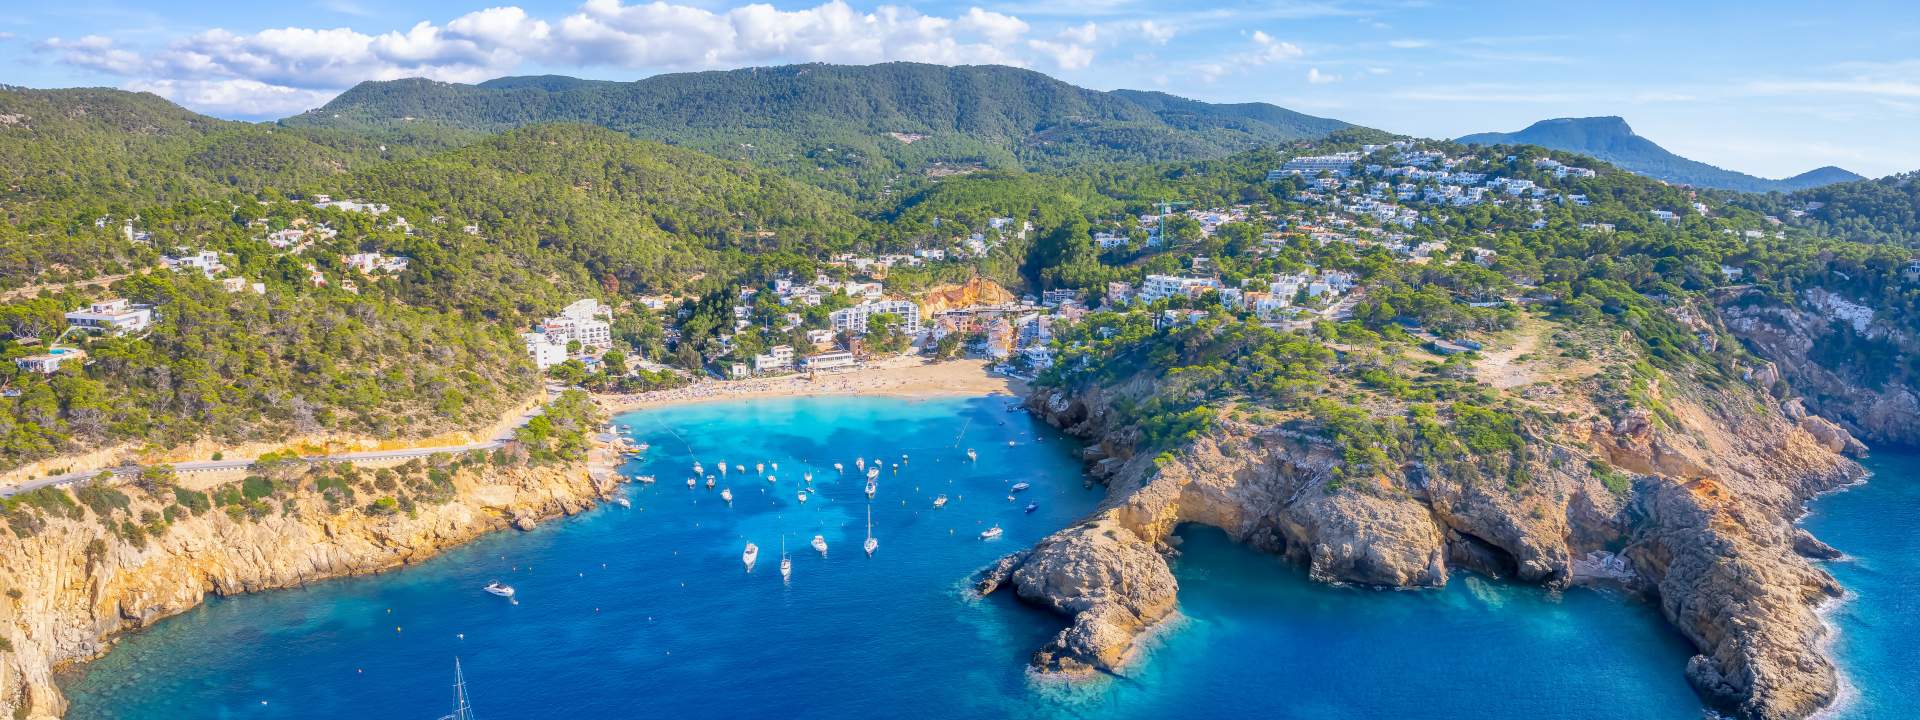 Ibiza, une île festive aux criques aussi mystérieuses qu'éblouissantes